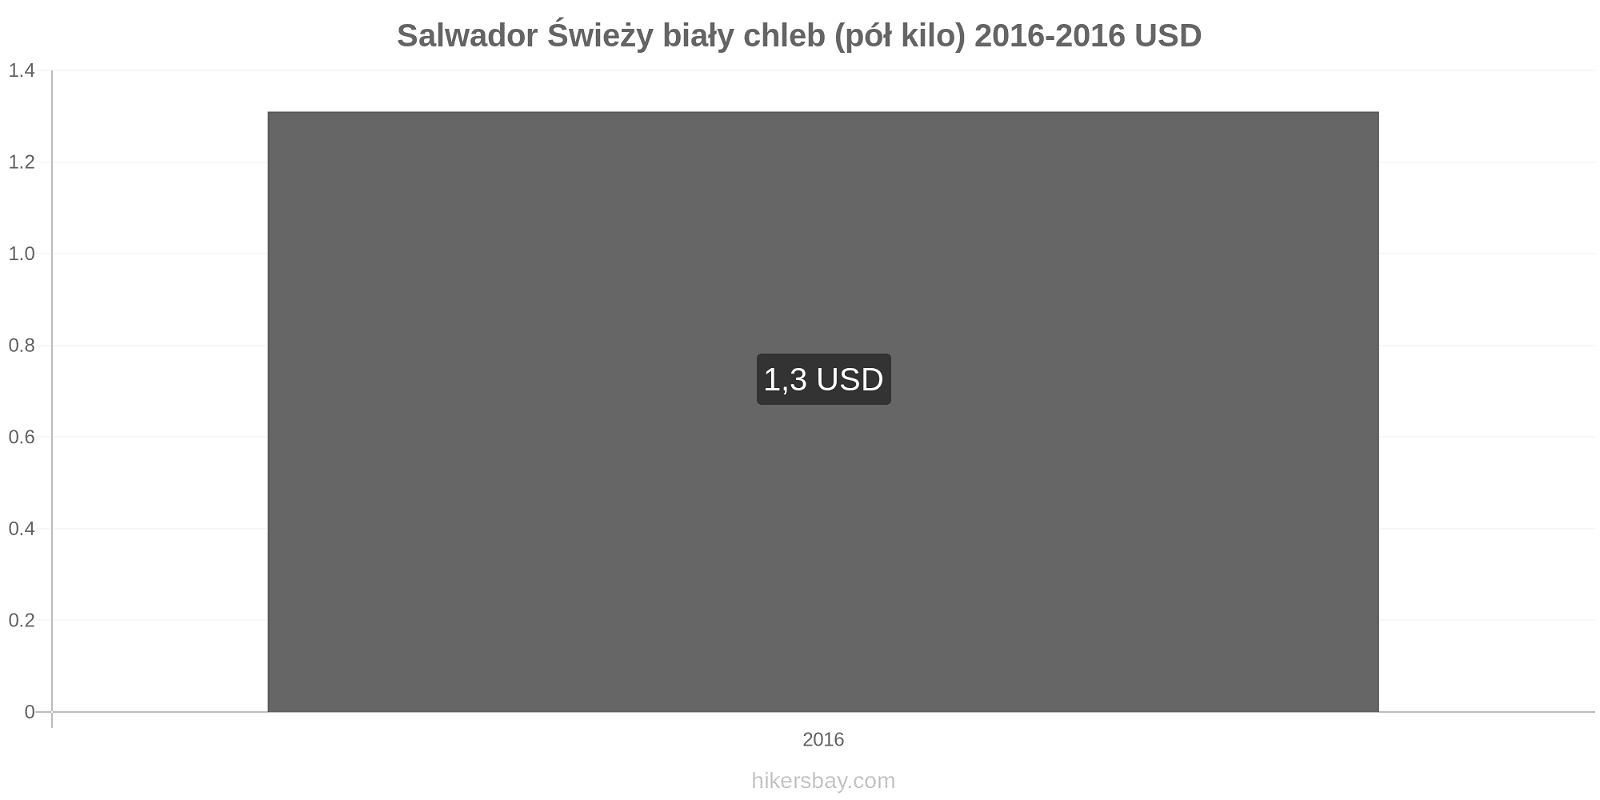 Salwador zmiany cen Chleb pół kilo hikersbay.com